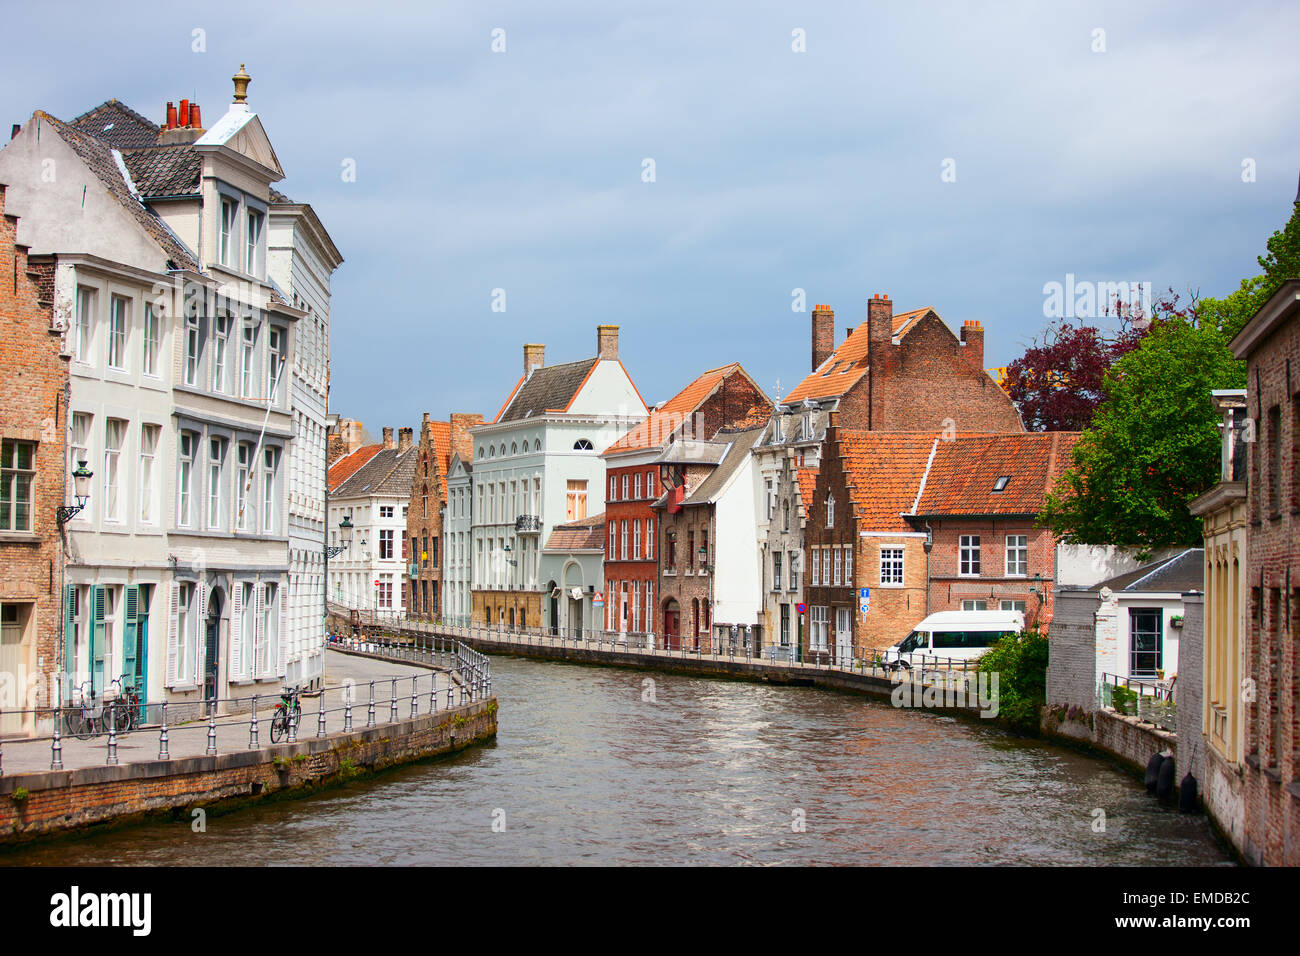 Bruges city in Belgium Stock Photo